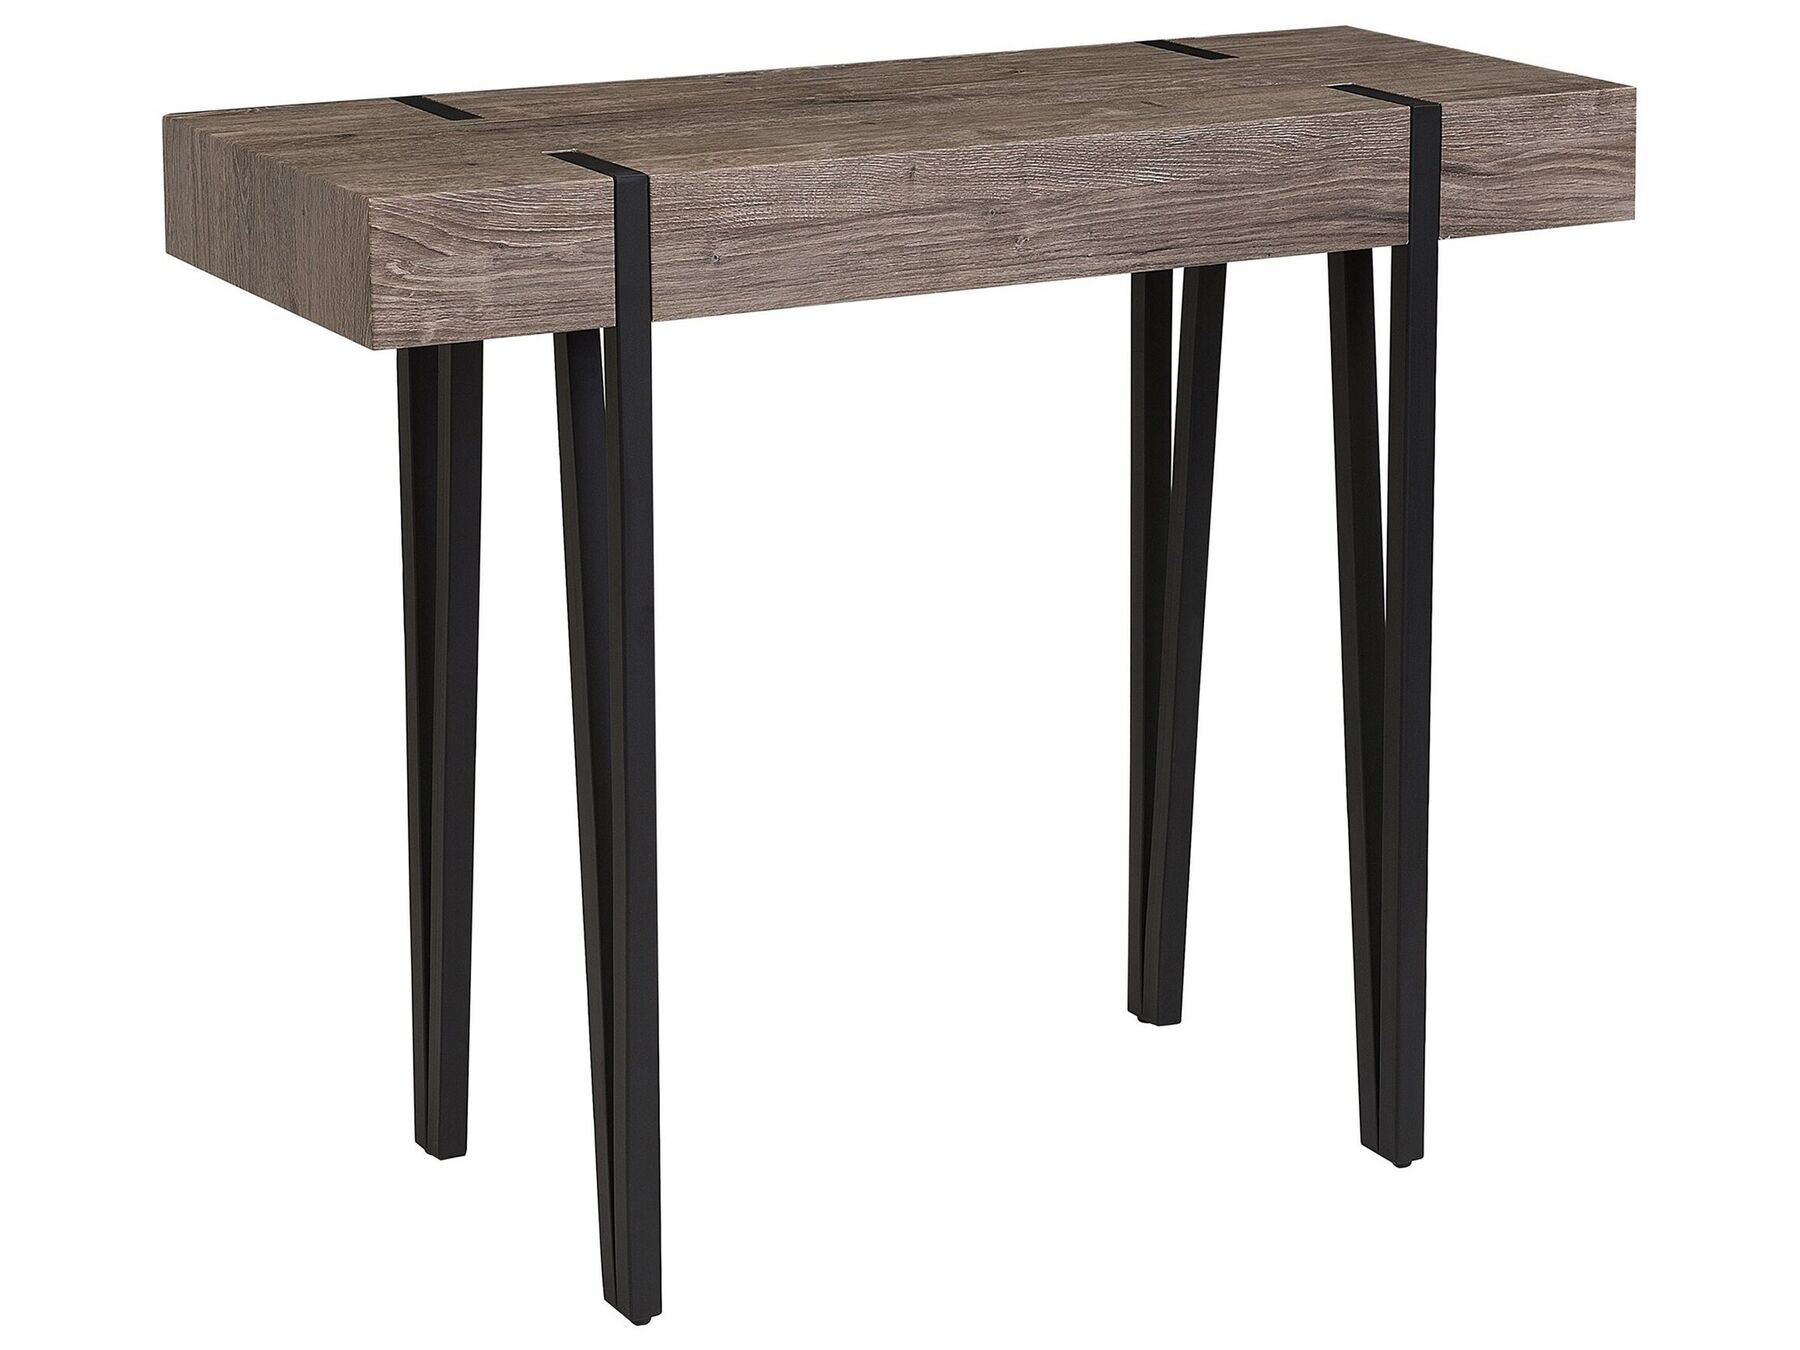 Industrial Console Table Dark Wood Top Metal Hairpin Legs Adena